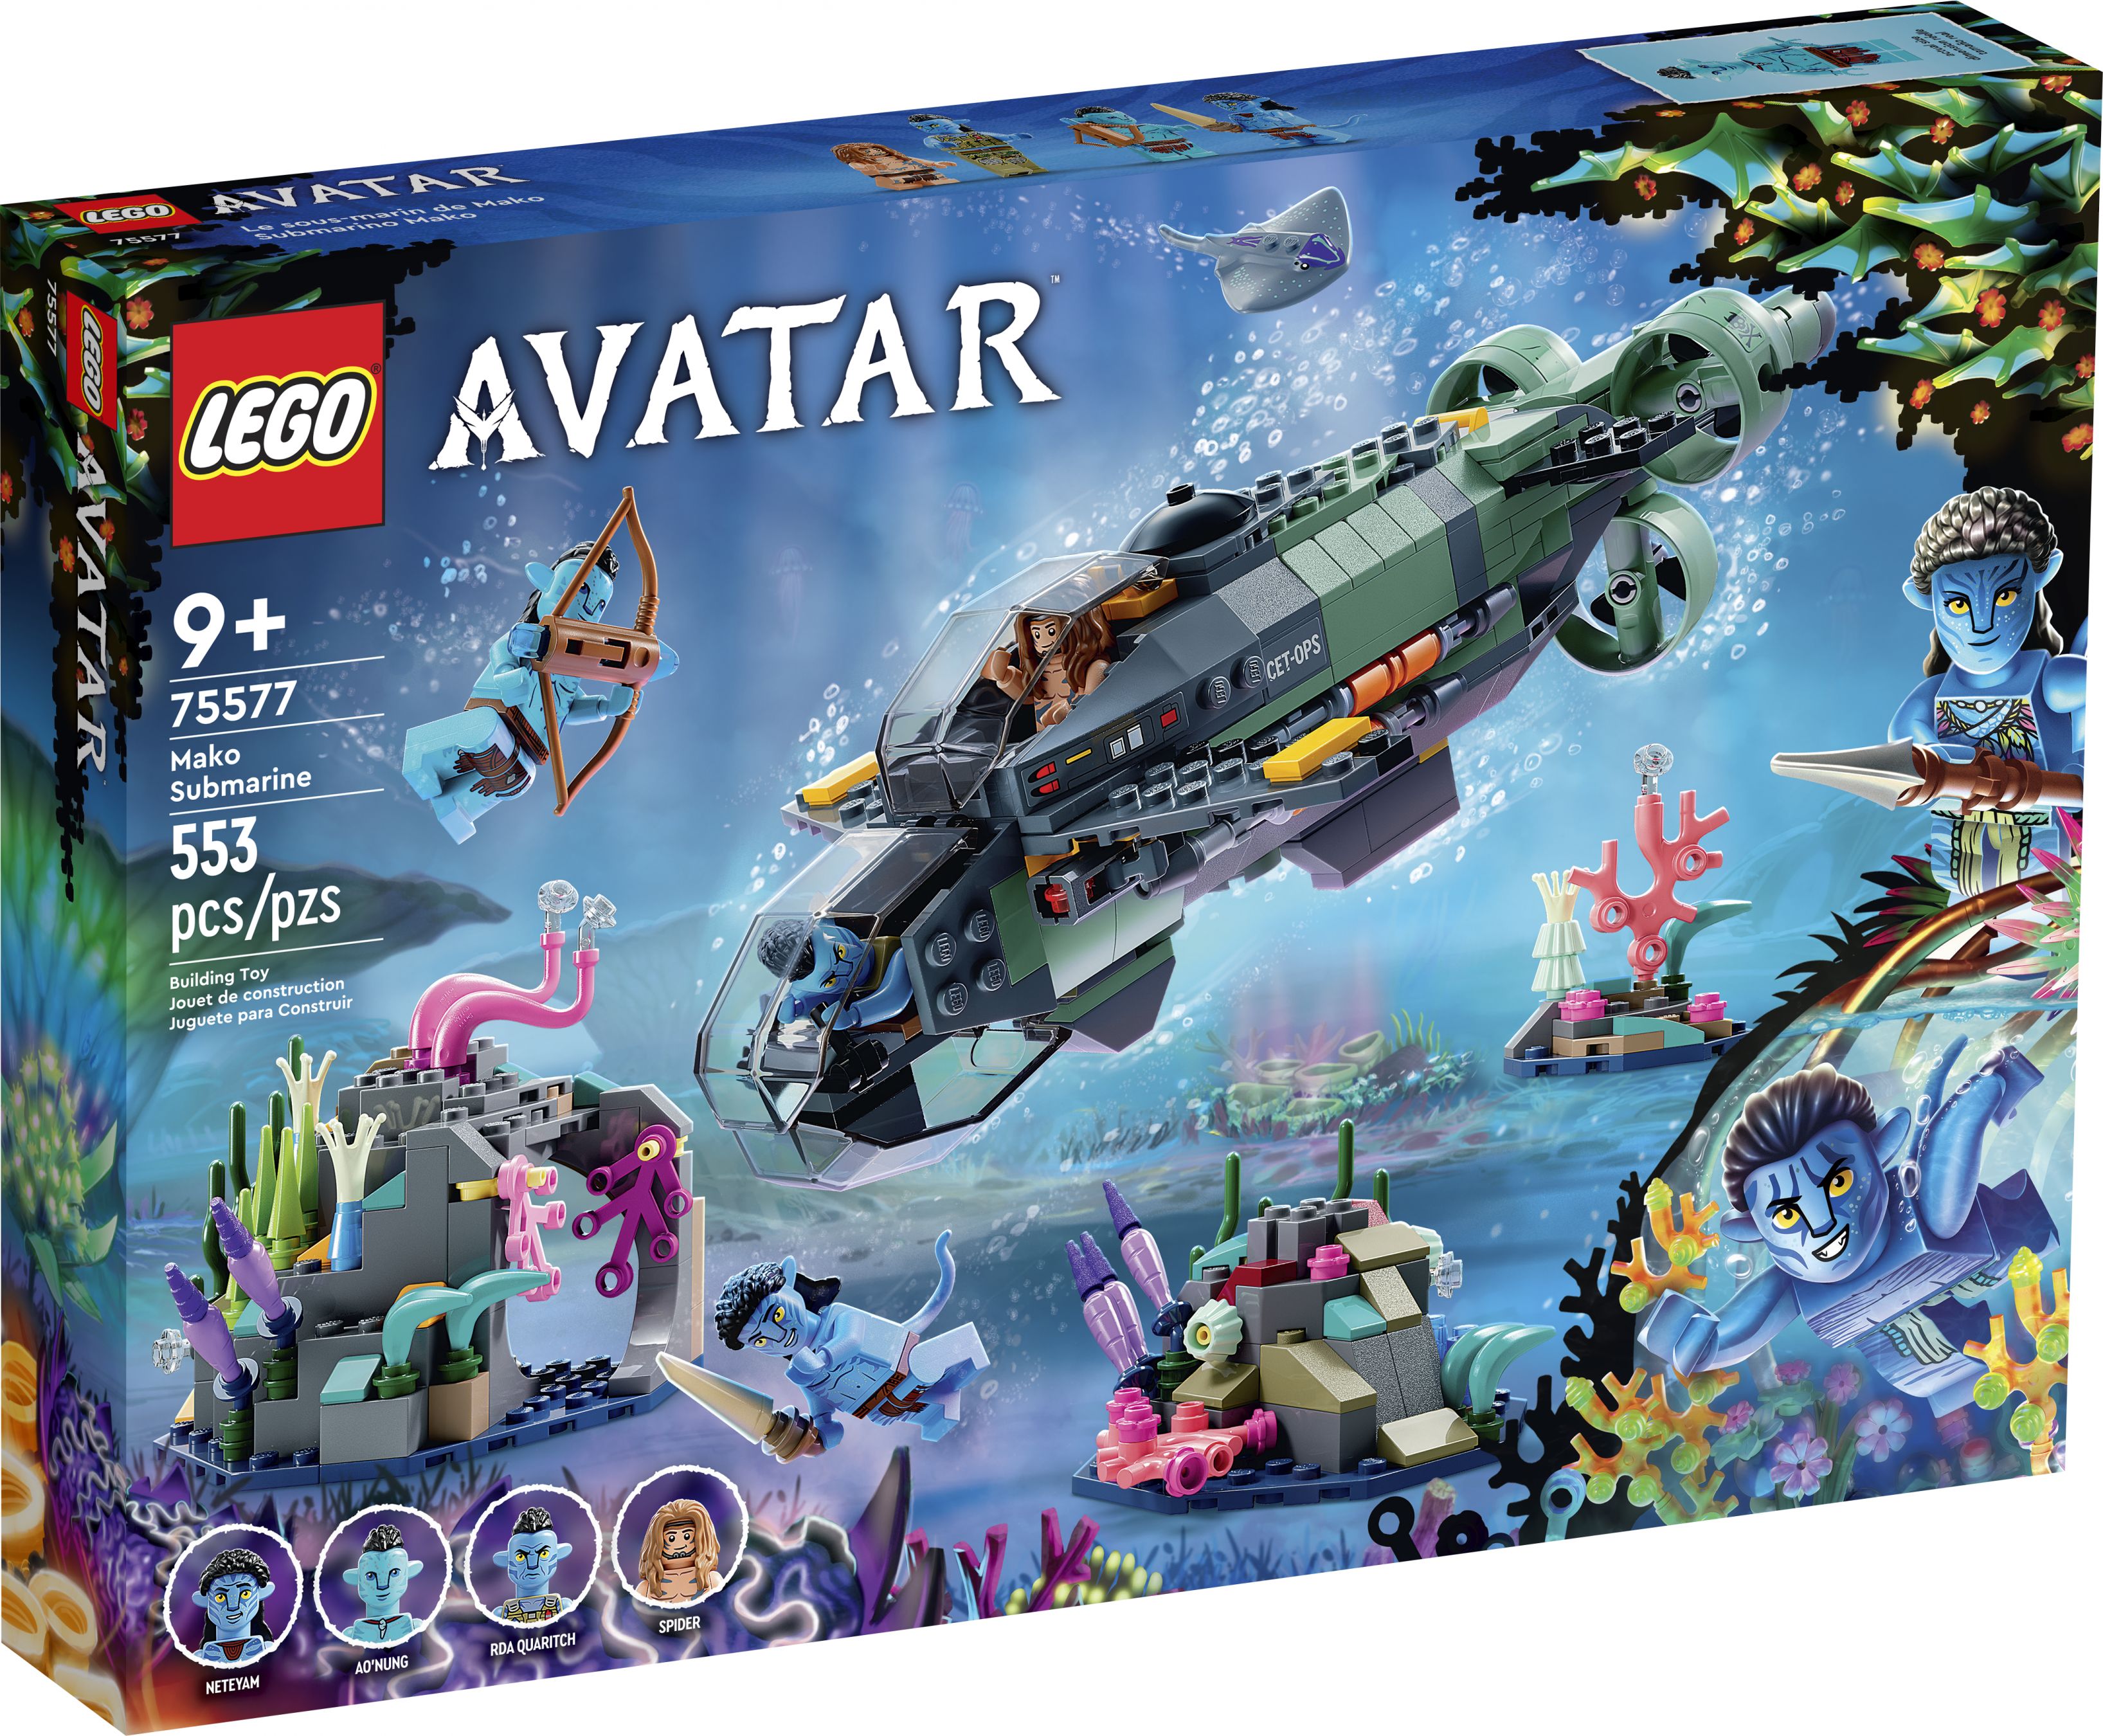 LEGO Avatar 75577 Mako U-Boot LEGO_75577_Box1_v39.jpg